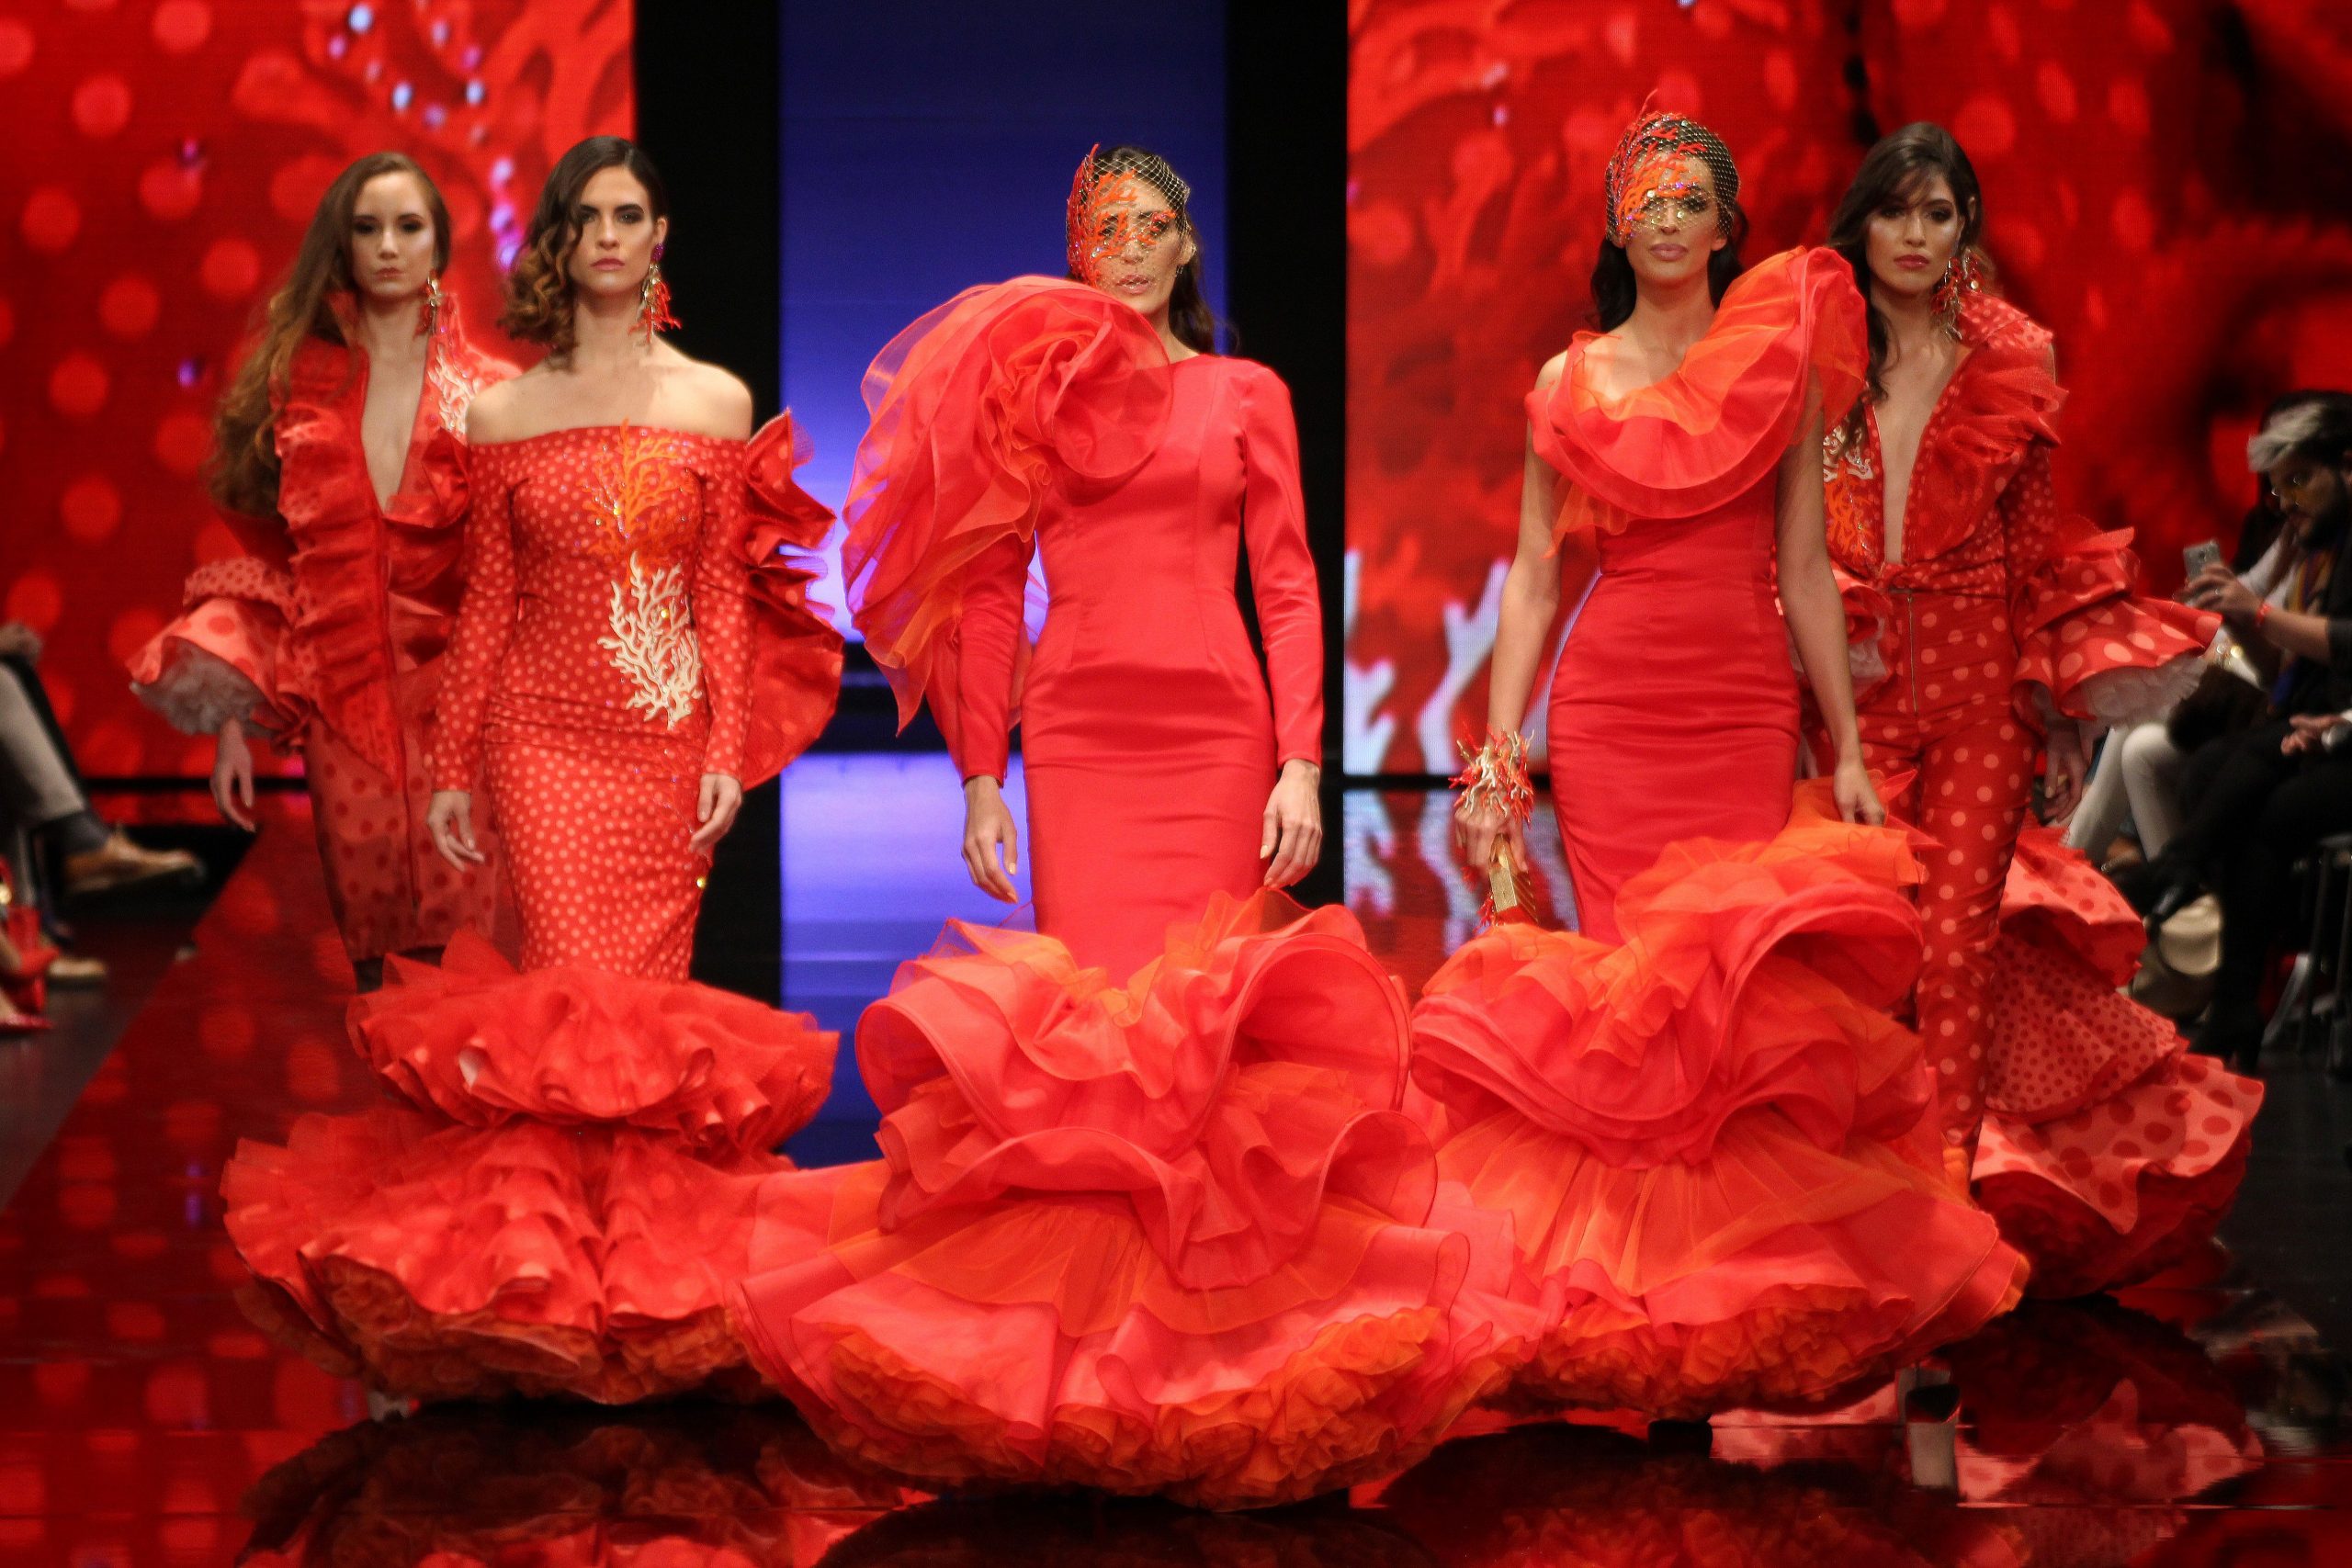 Simof - Resumen de la III jornada en el Salón internacional de flamenca de Sevilla. Tendencias en moda flamenca para 2018